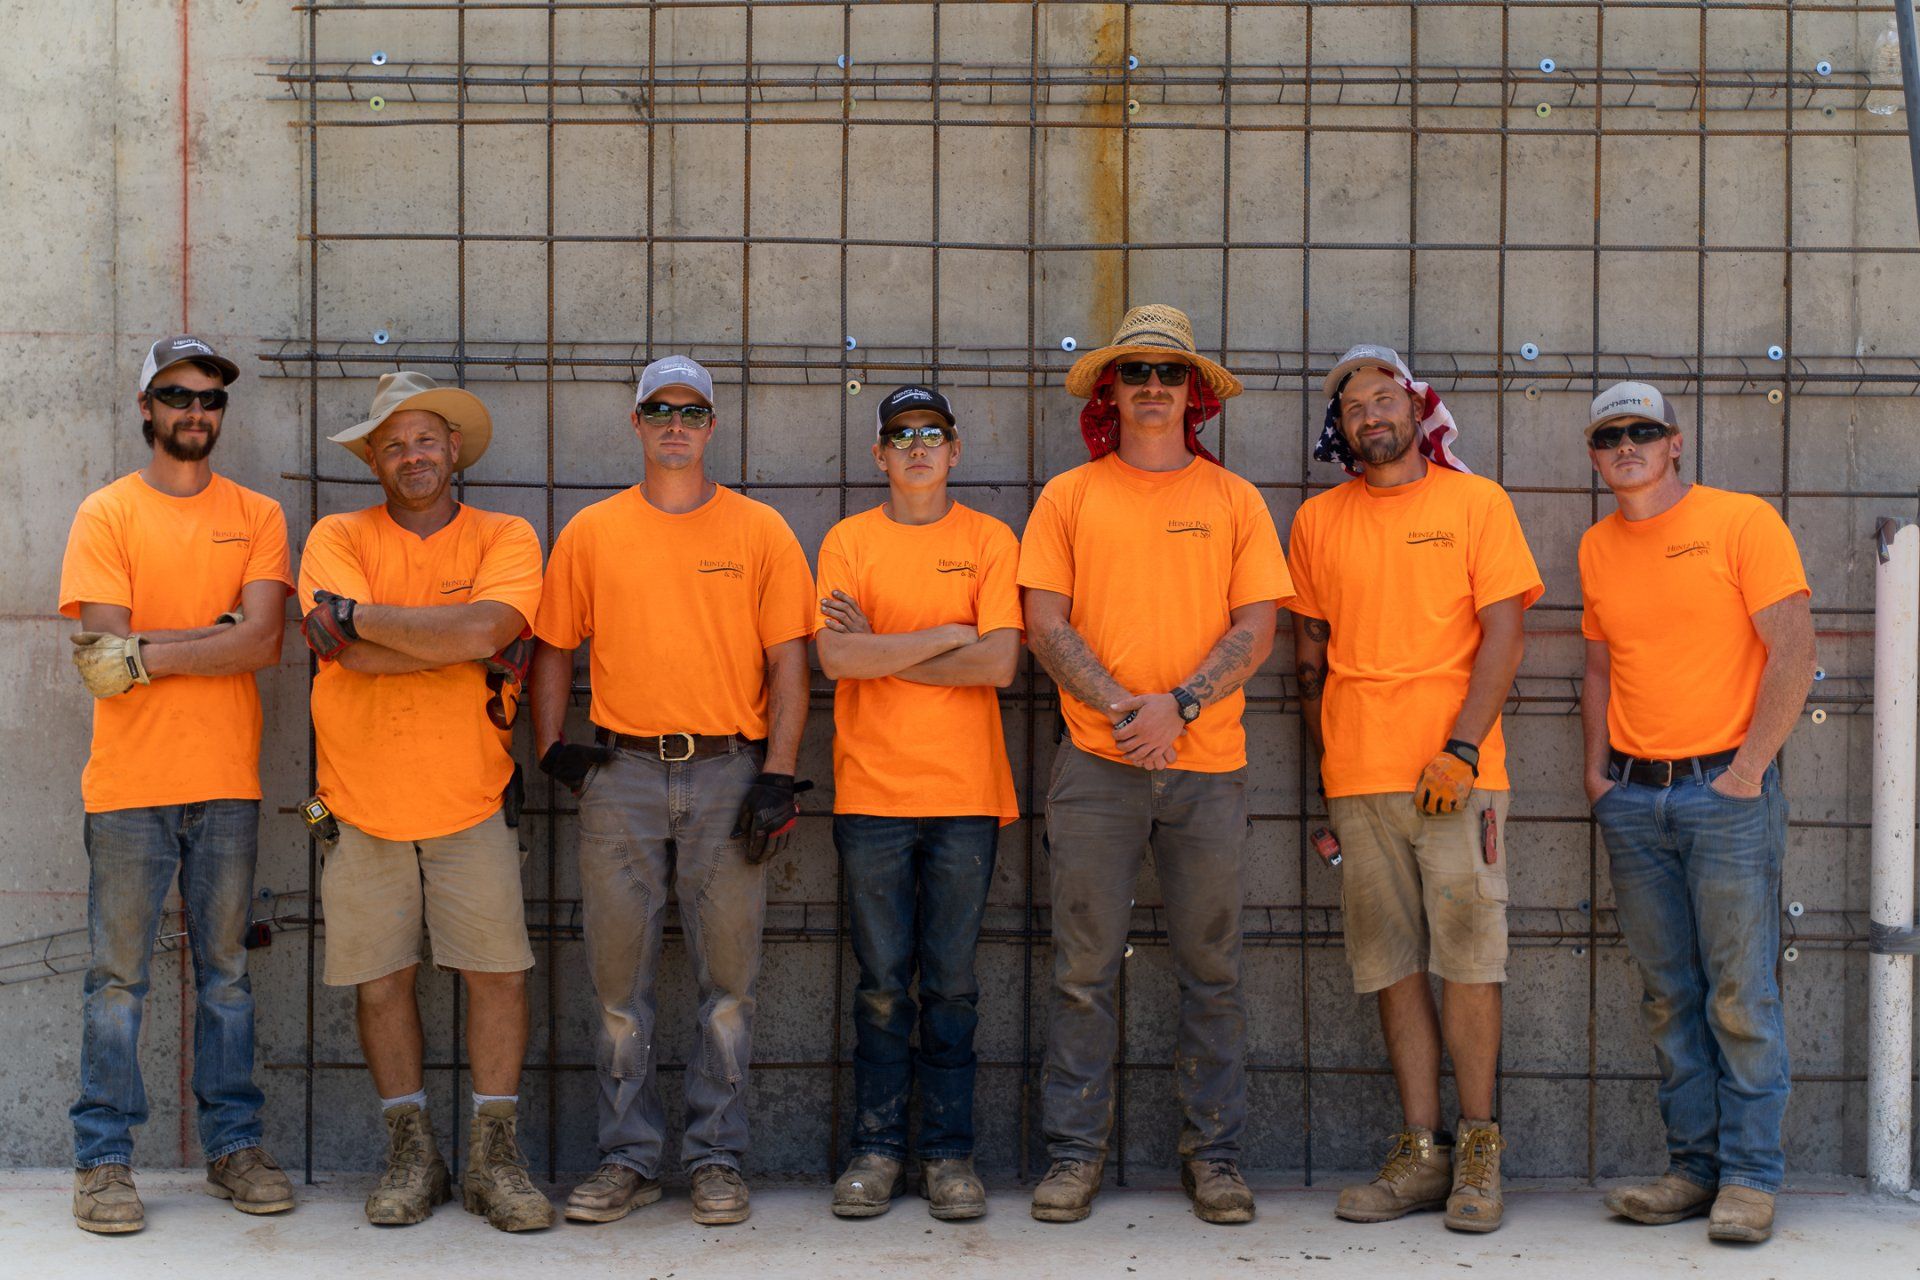 Seven members of Heintz Pool & Sopa team in their orange uniforms standing side by side